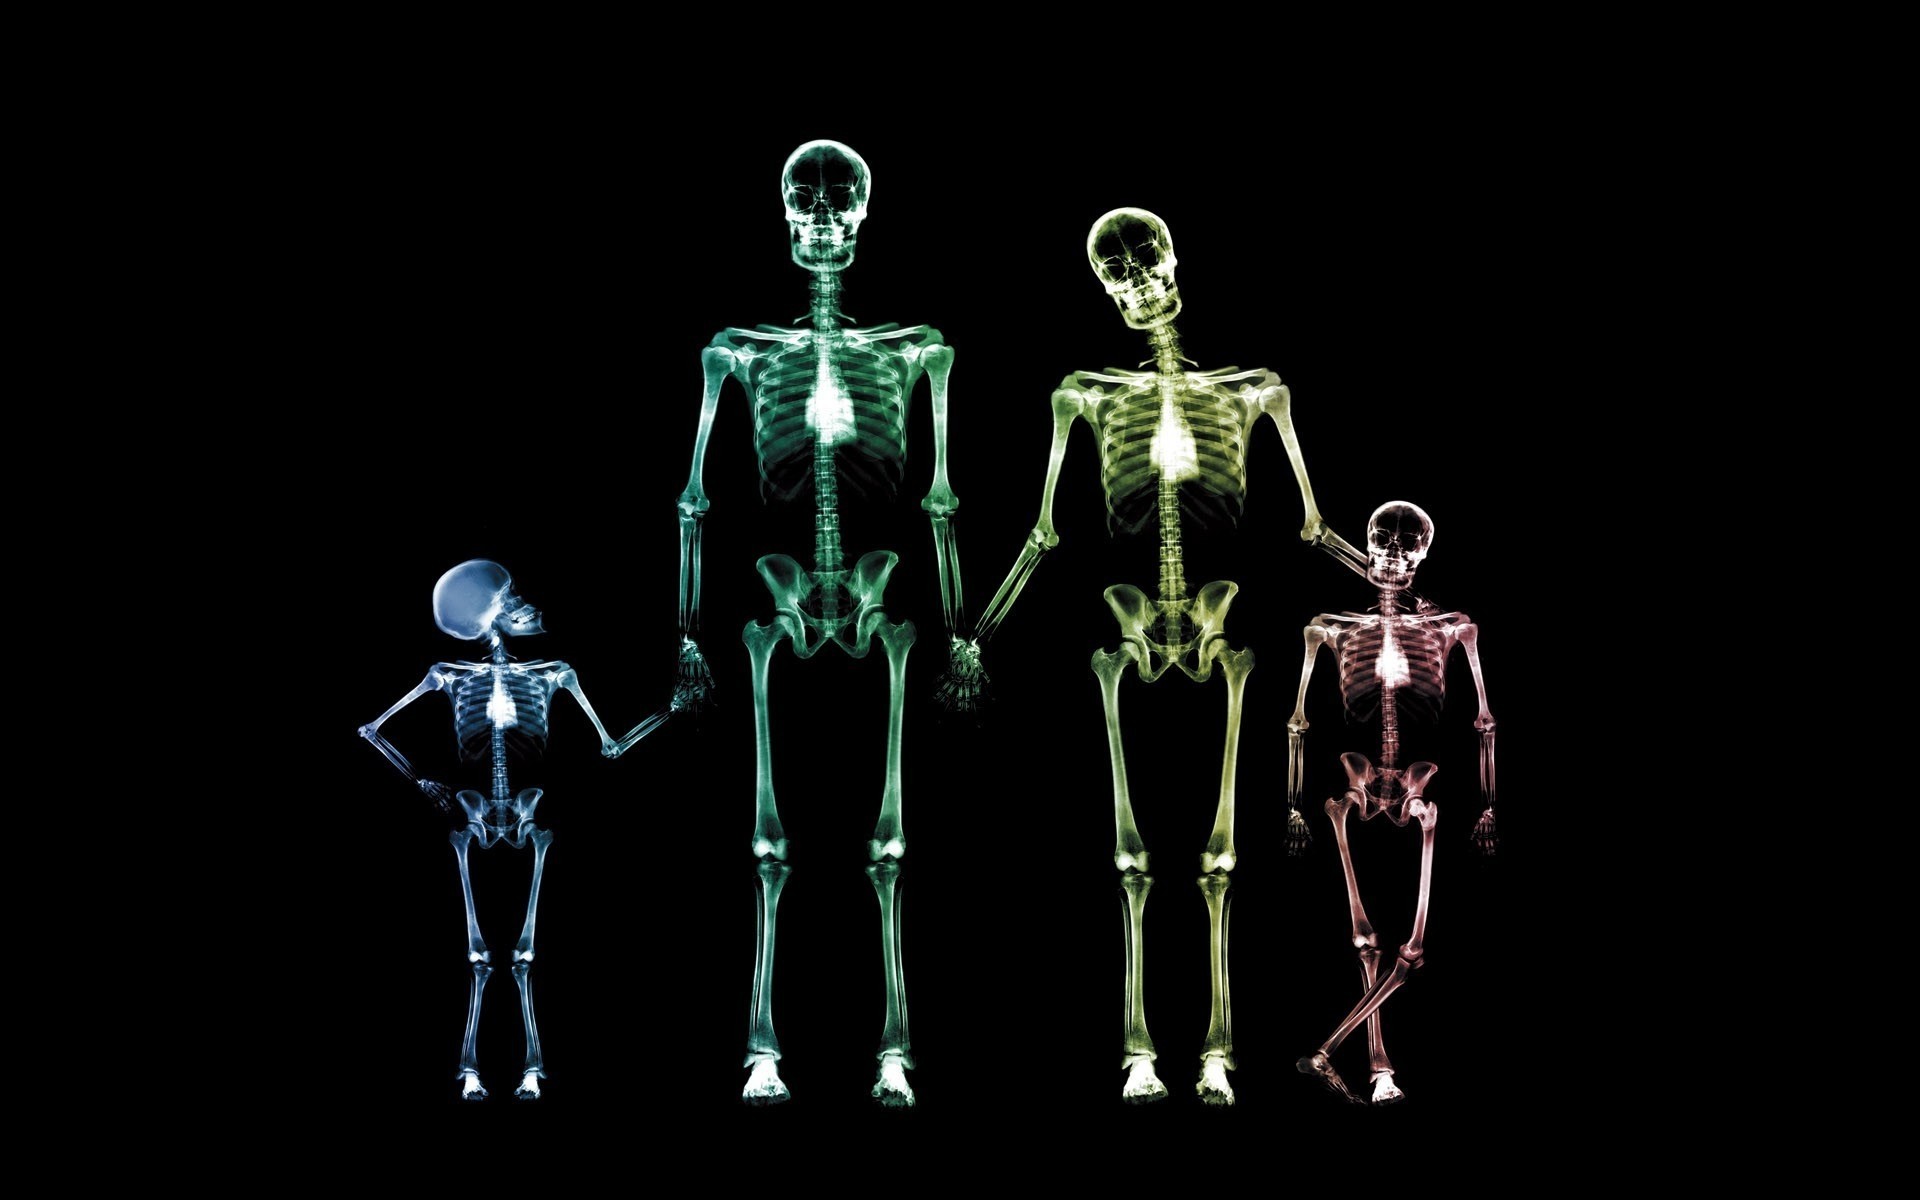 drawings биология наука анатомия рамка медицина человек тело кость черный цвета смешно обои